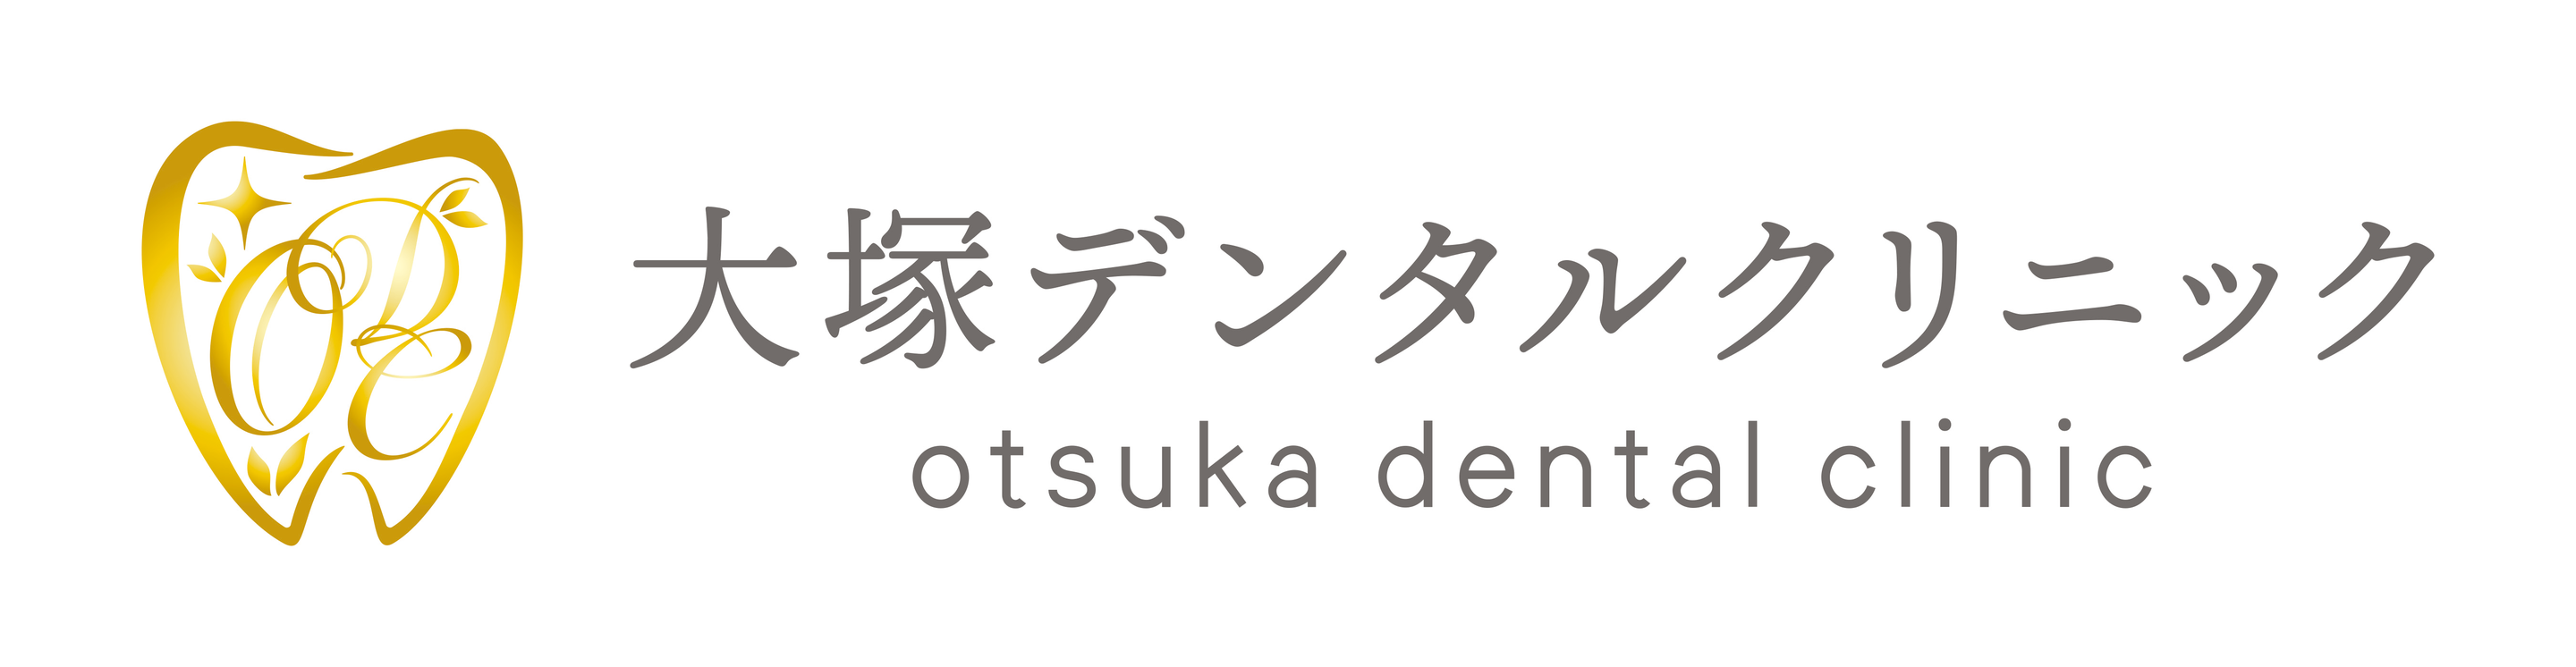 大塚デンタルクリニック Otsuka Dental Clinic